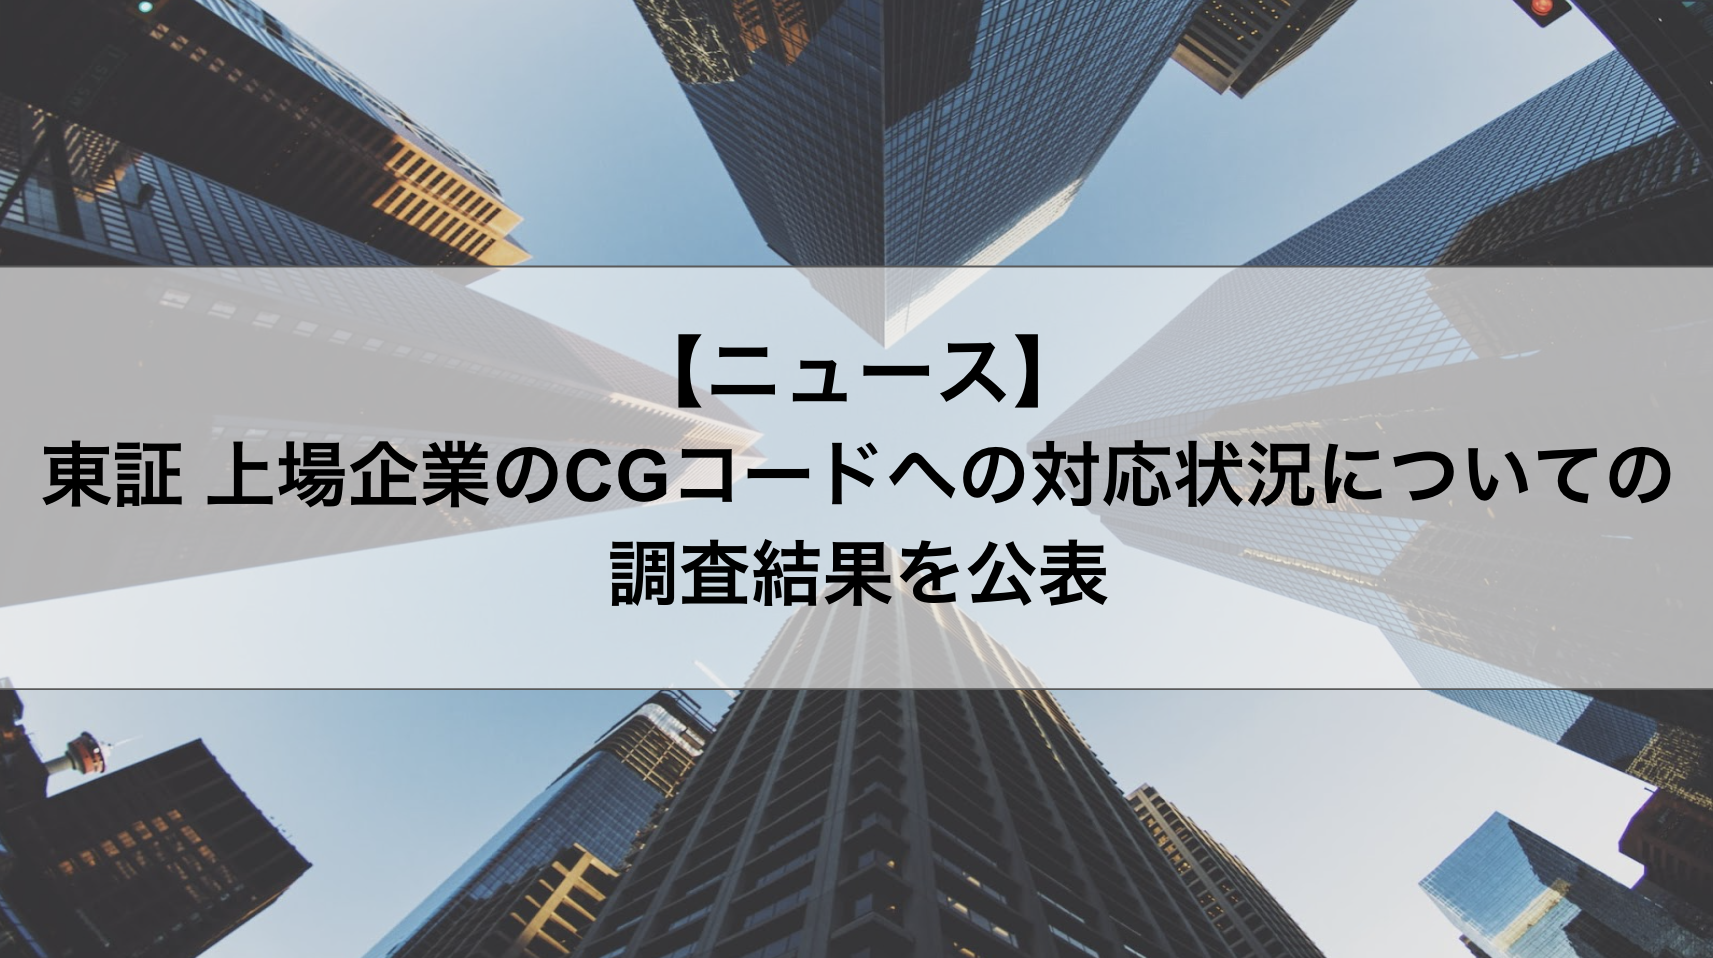 【東証】上場企業のCGコードへの対応状況についての調査結果を公表